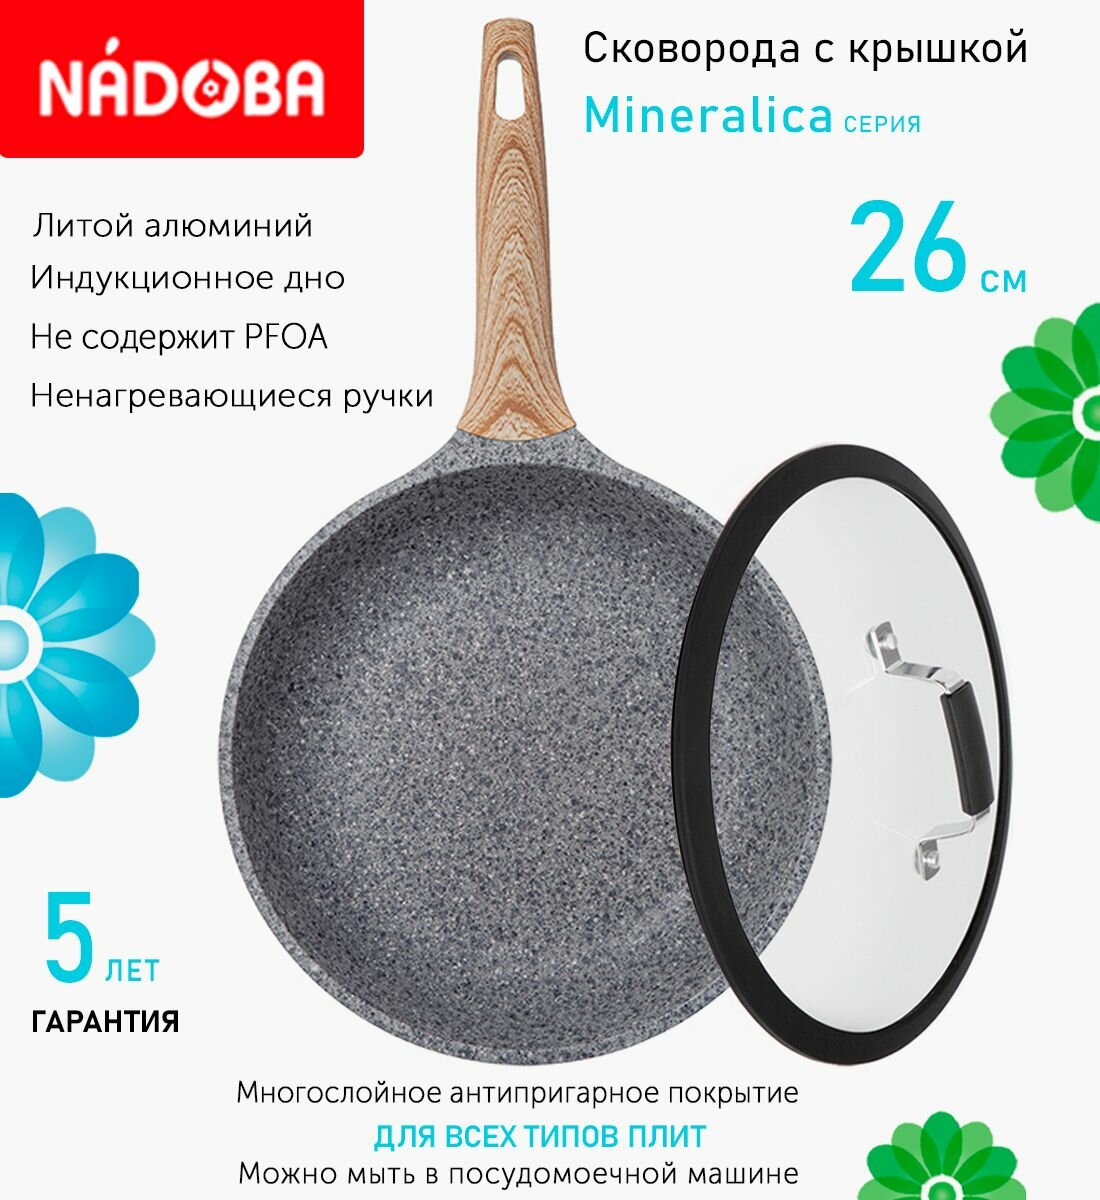 Сковорода с крышкой NADOBA 26см, серия "Mineralica" (арт. 728417/751412)